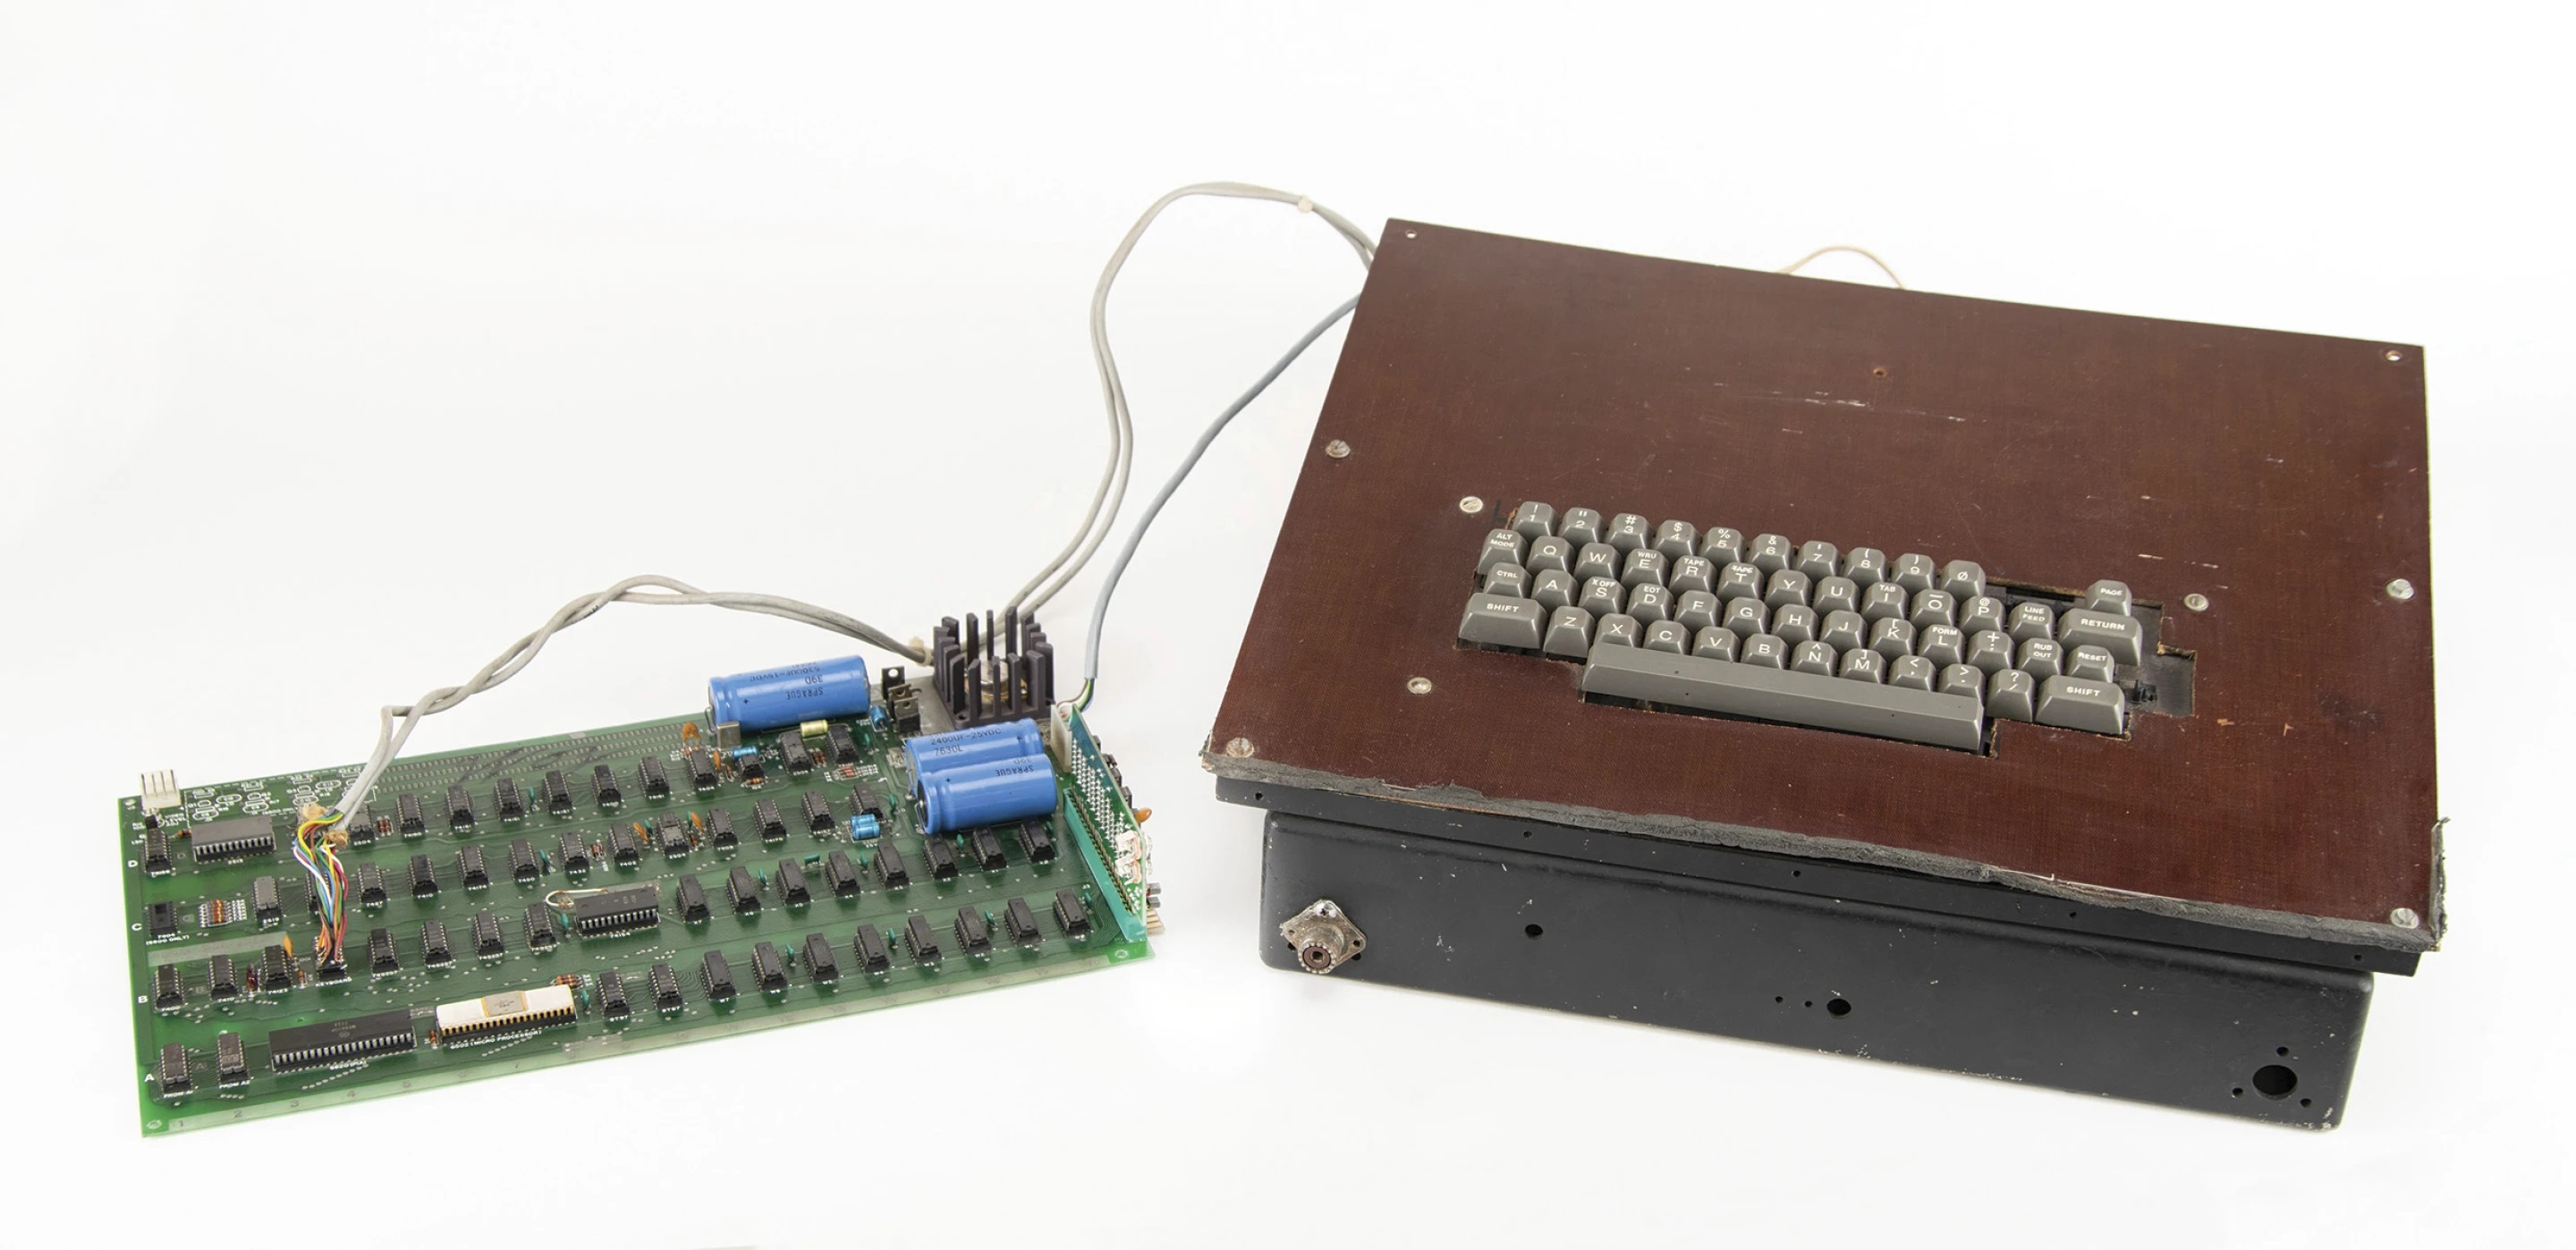 De eerste computer van Apple, uitgebracht in de jaren '70, wordt geveild - de prijs is $200.000